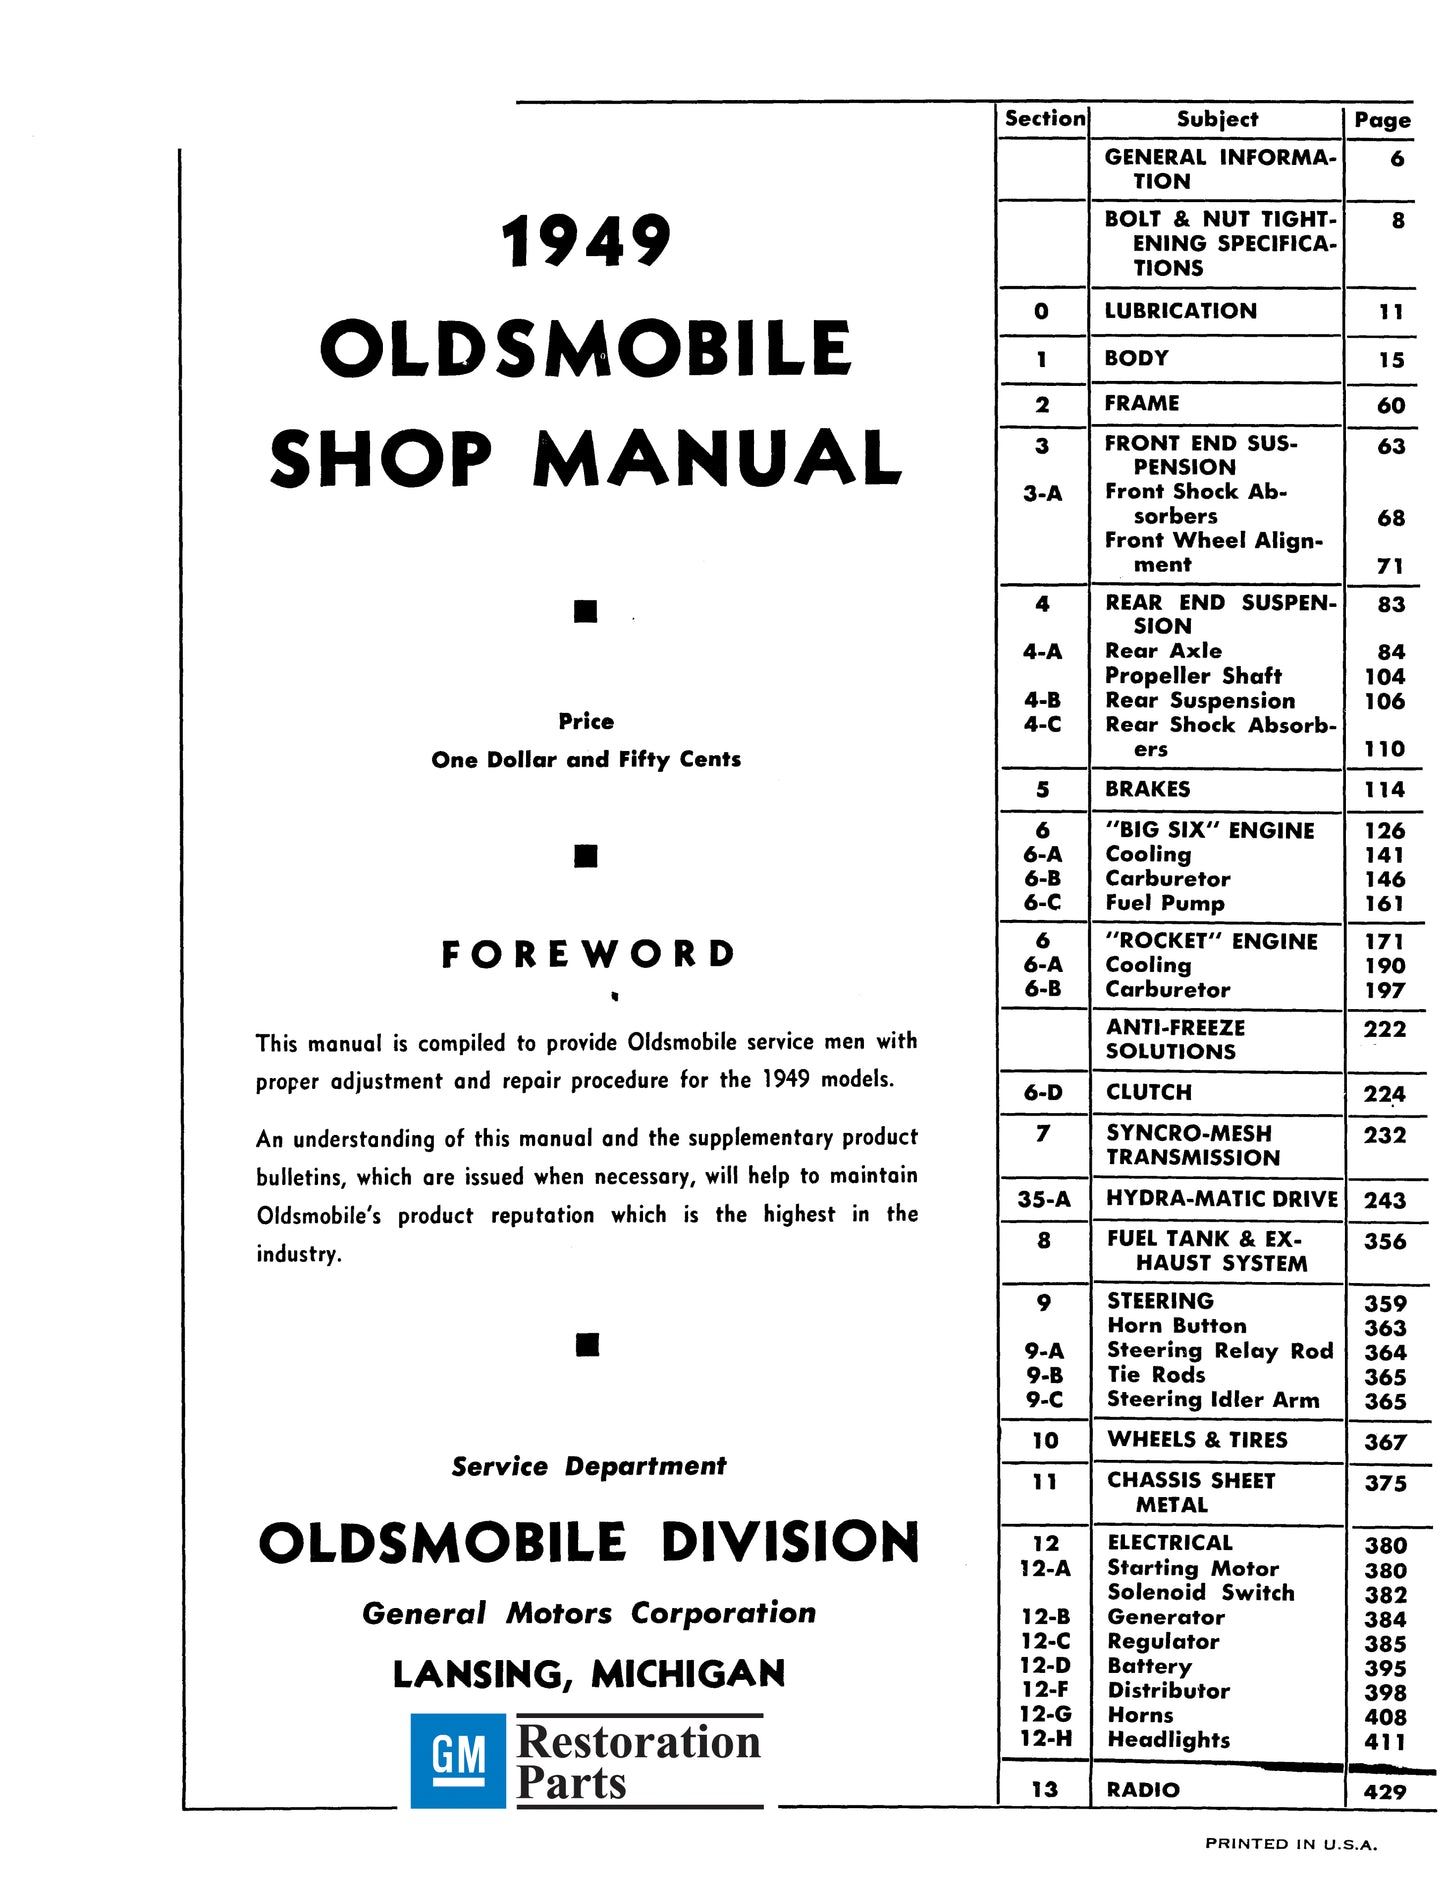 1949 Oldsmobile Shop Manual - All Models